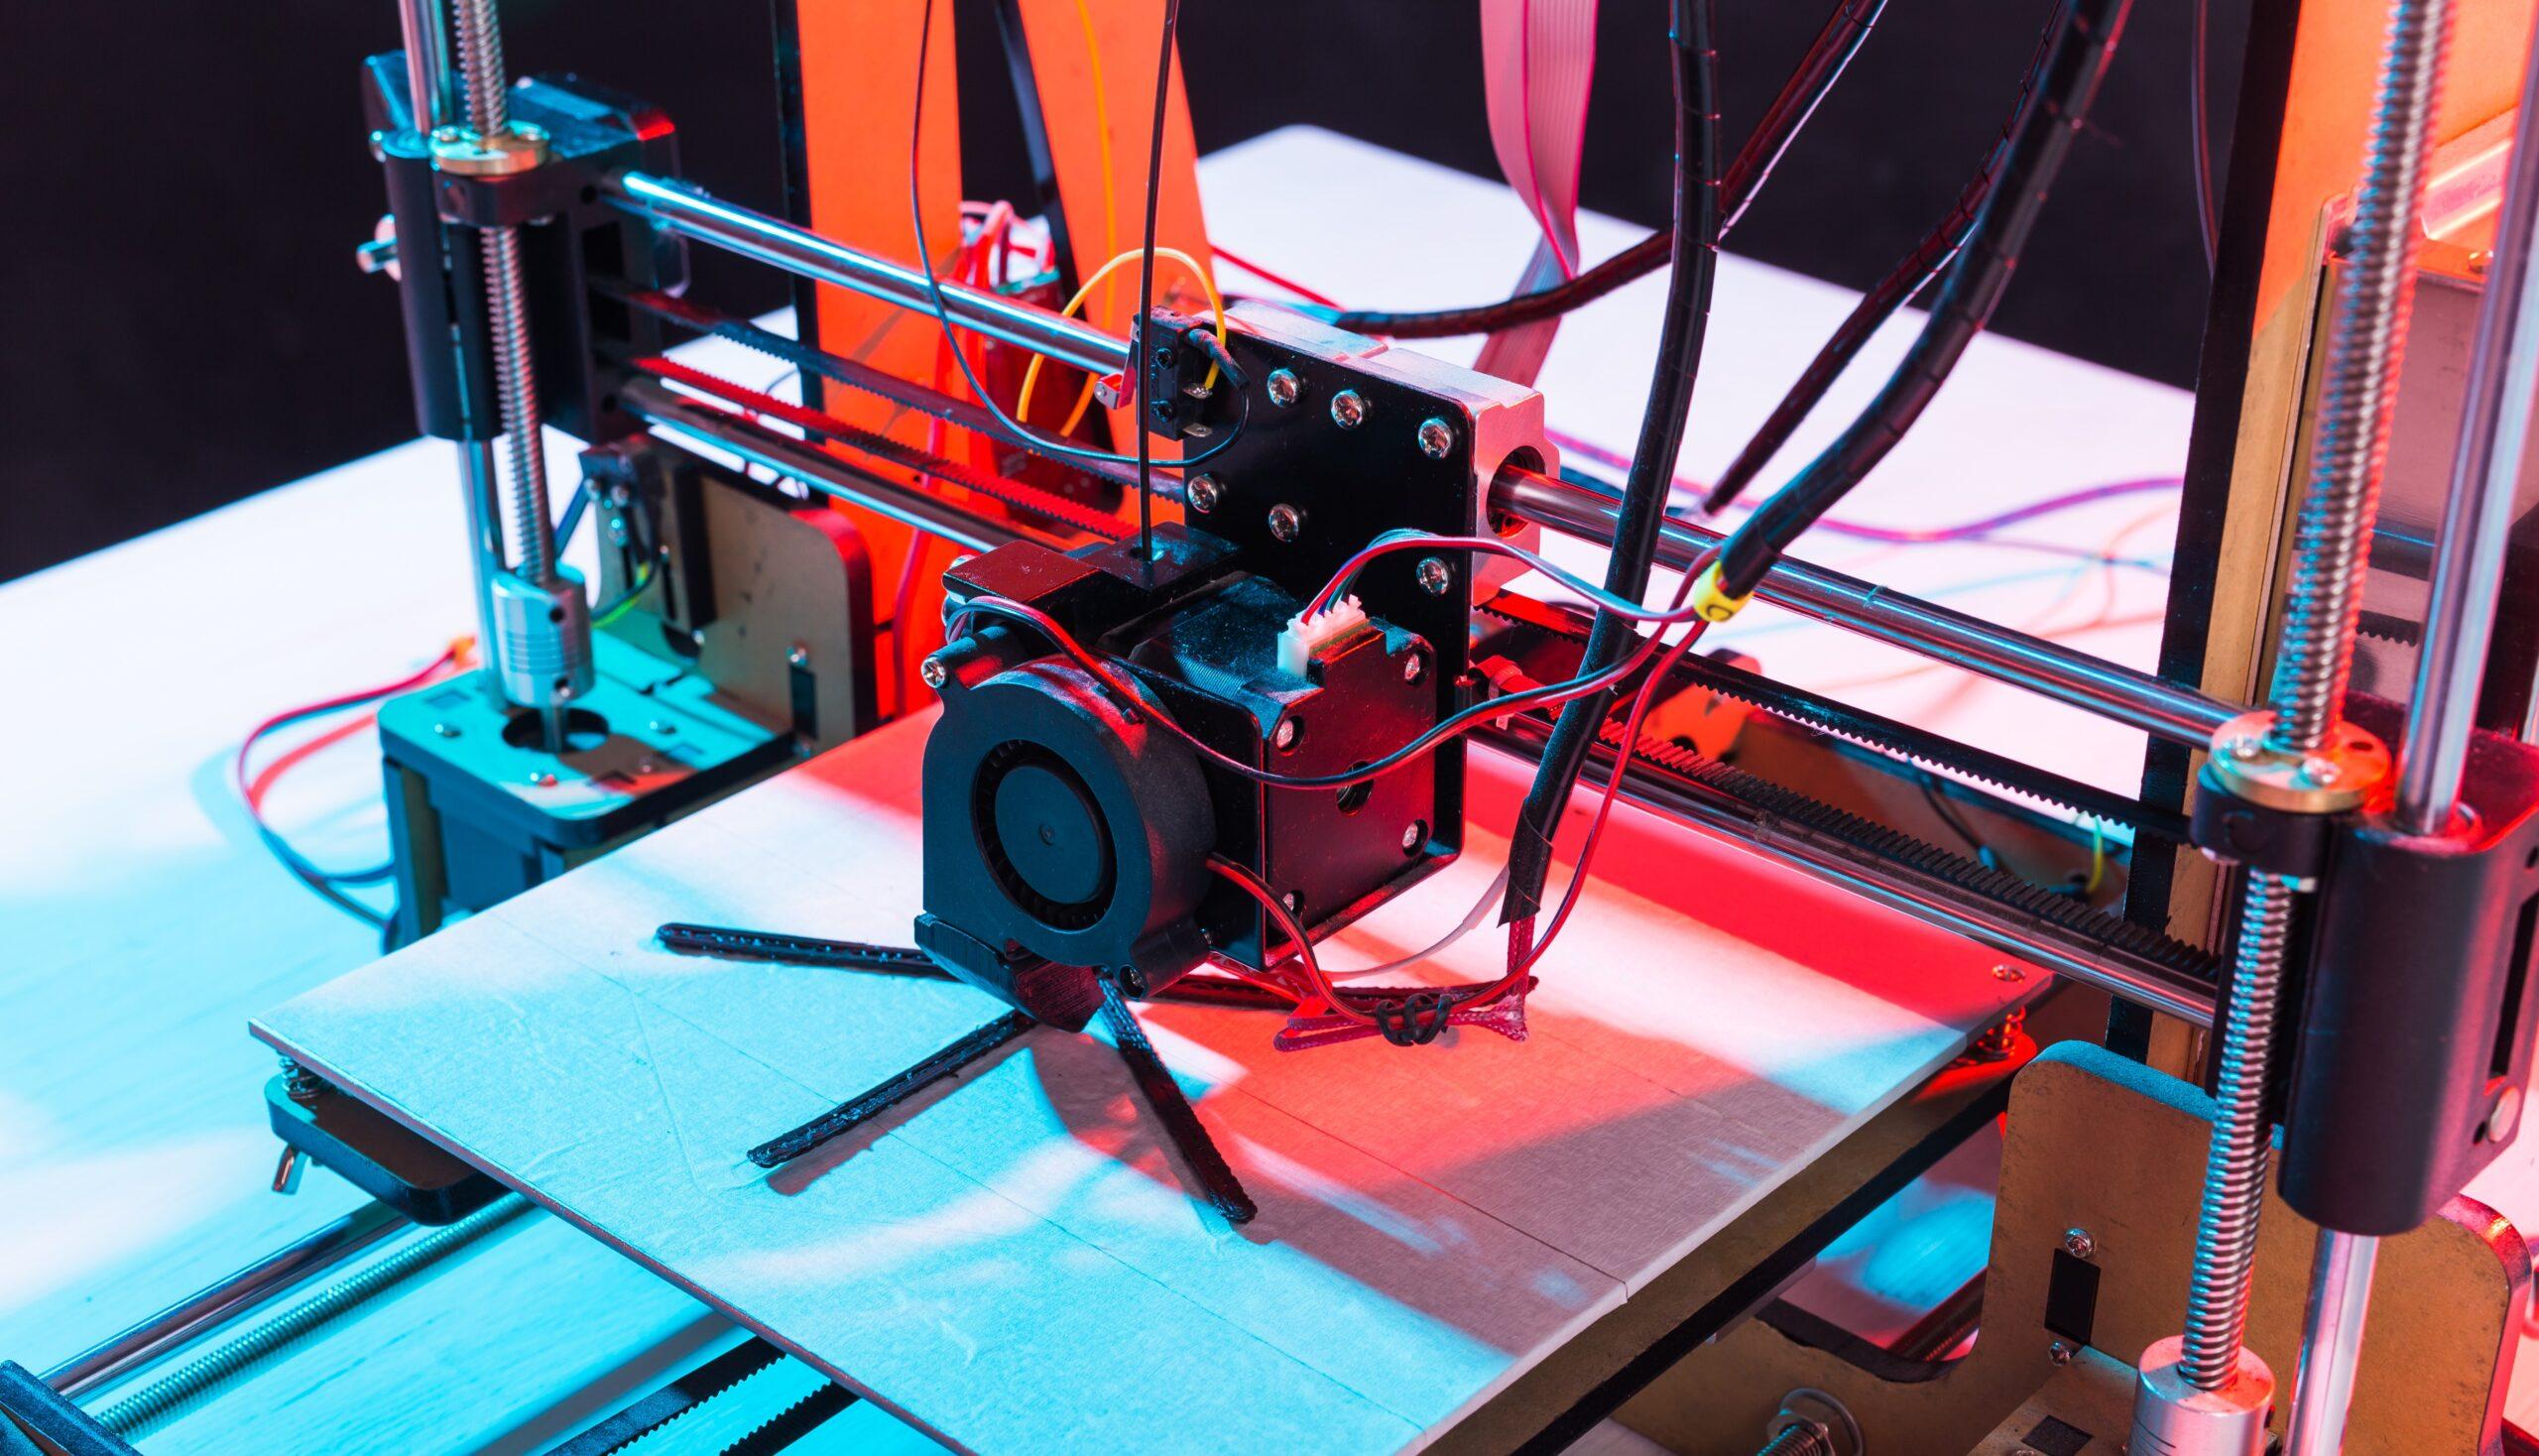 Lire la suite à propos de l’article Impression 3D : Comment optimiser la vitesse de votre imprimante ?